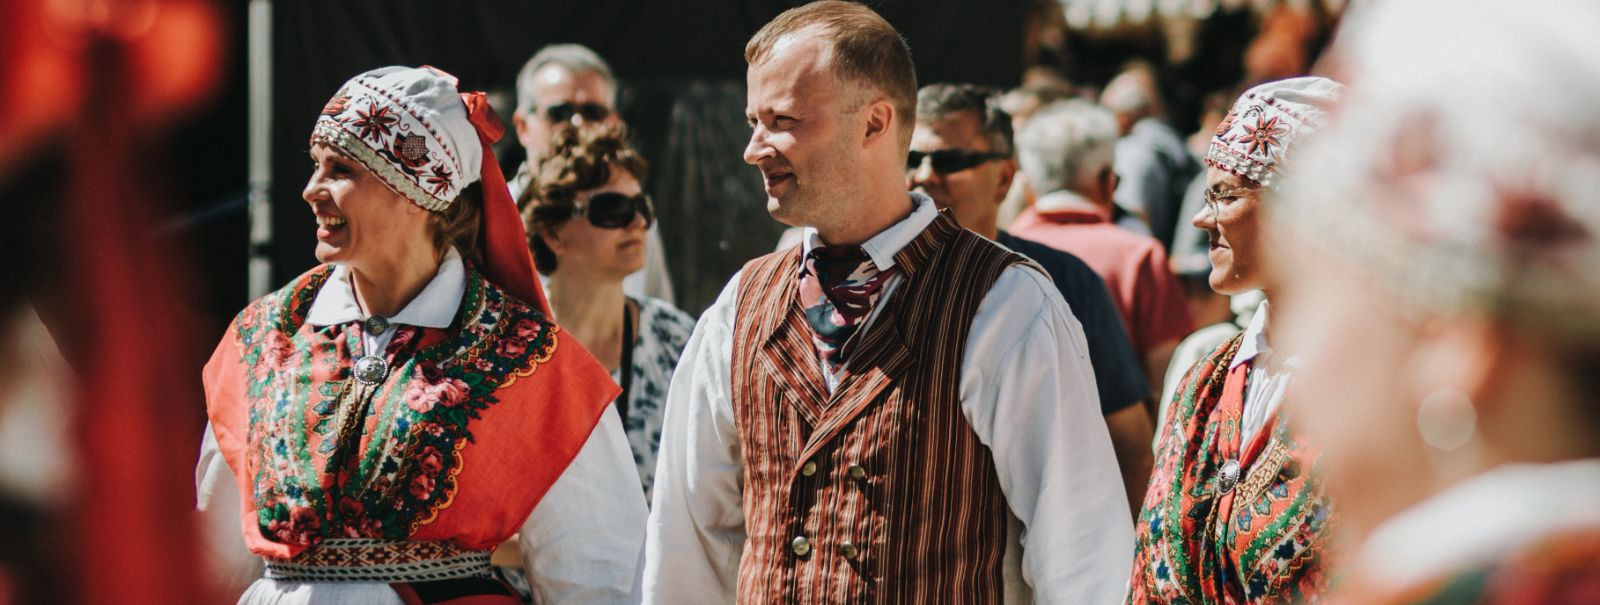 Eesti on maa, mille rikkalik kultuuripärand on aastasadu inspireerinud ...